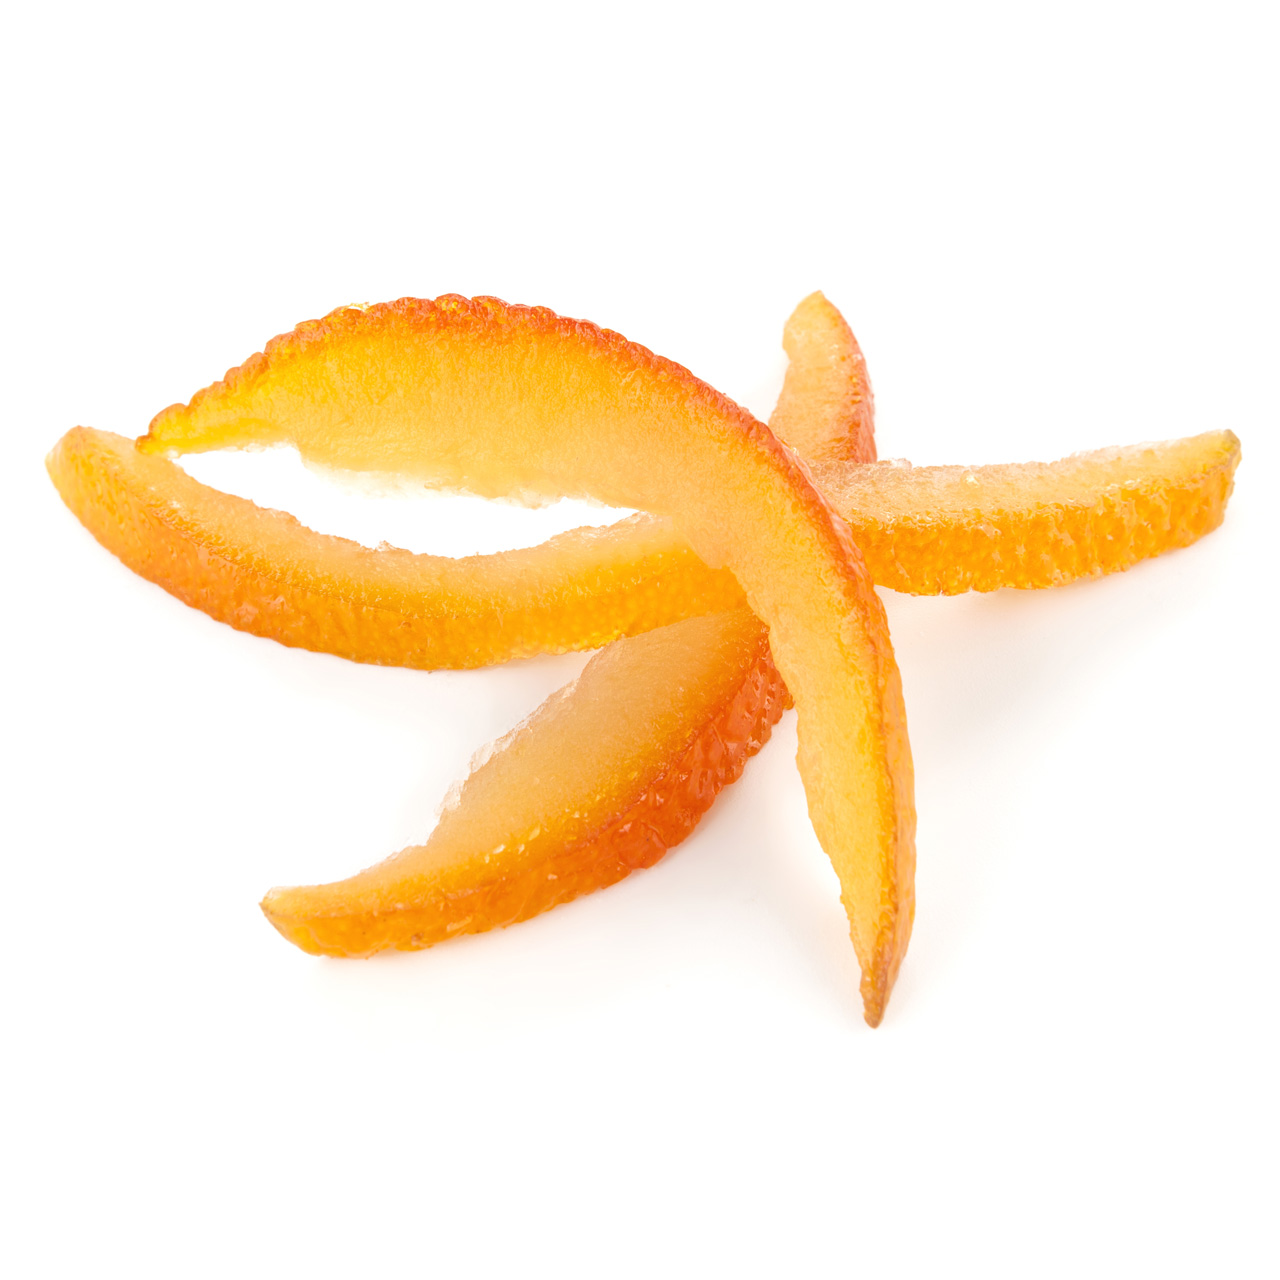 Scorze di arancia candita